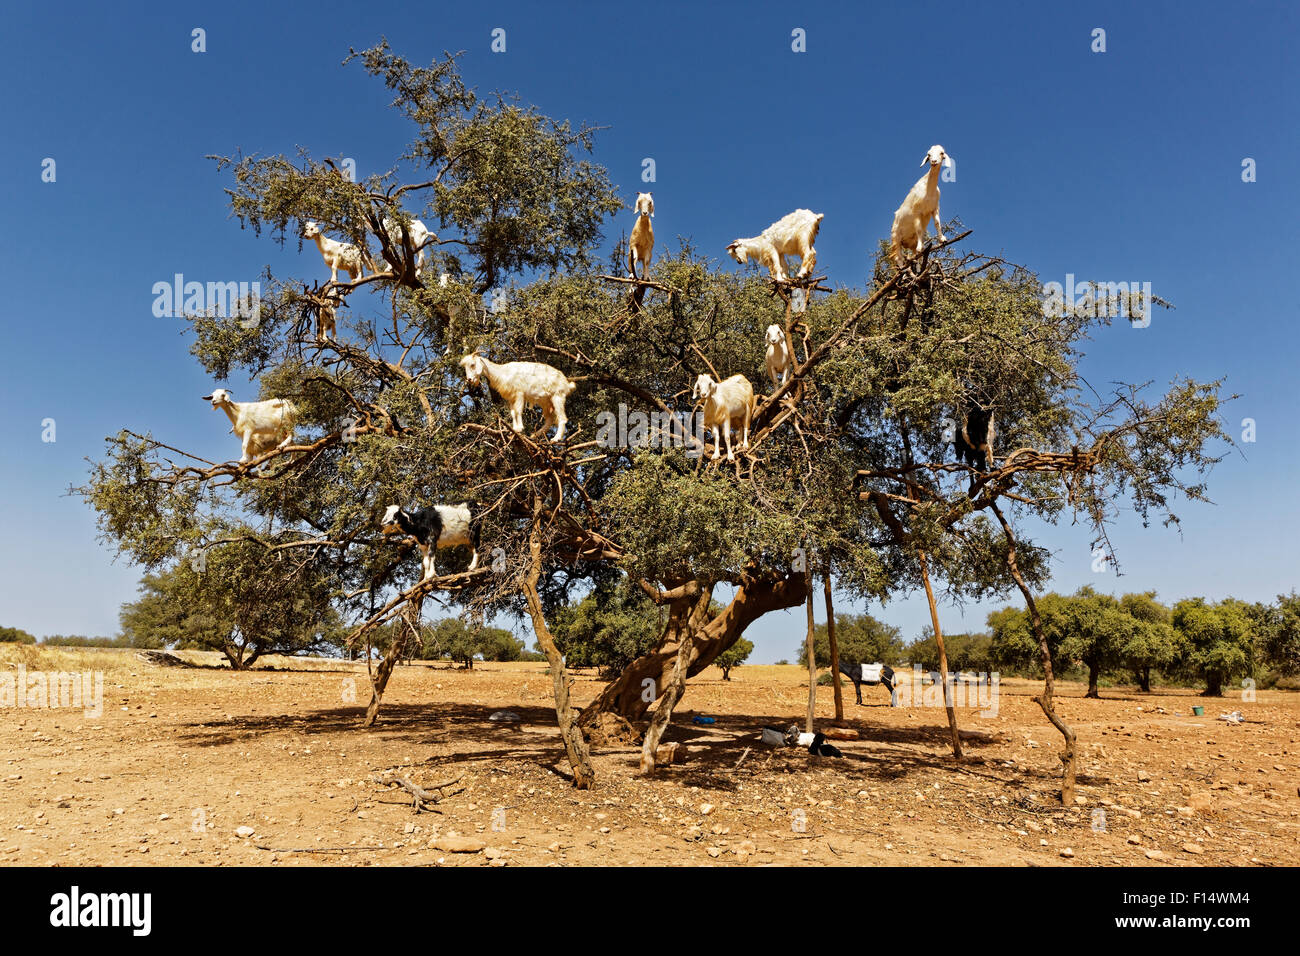 Árboles de argán y las cabras en el camino entre Essaouira y Marrakech en Marruecos.El aceite de argán se produce utilizando las semillas. Foto de stock